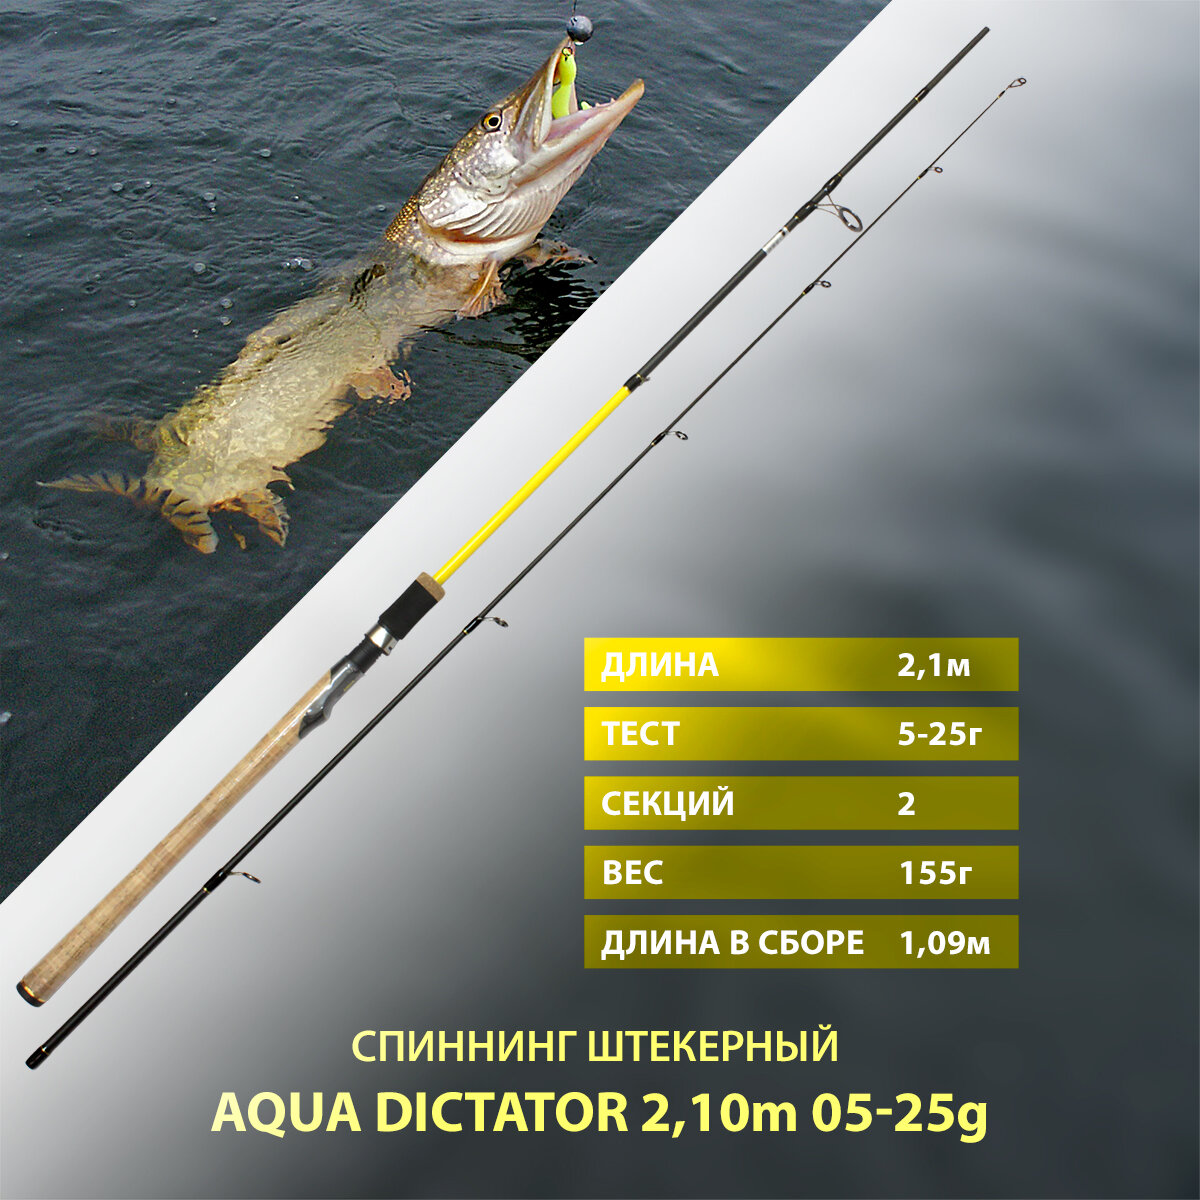 Спиннинг штекерный AQUA DICTATOR, длина 2,10m, тест 05-25g